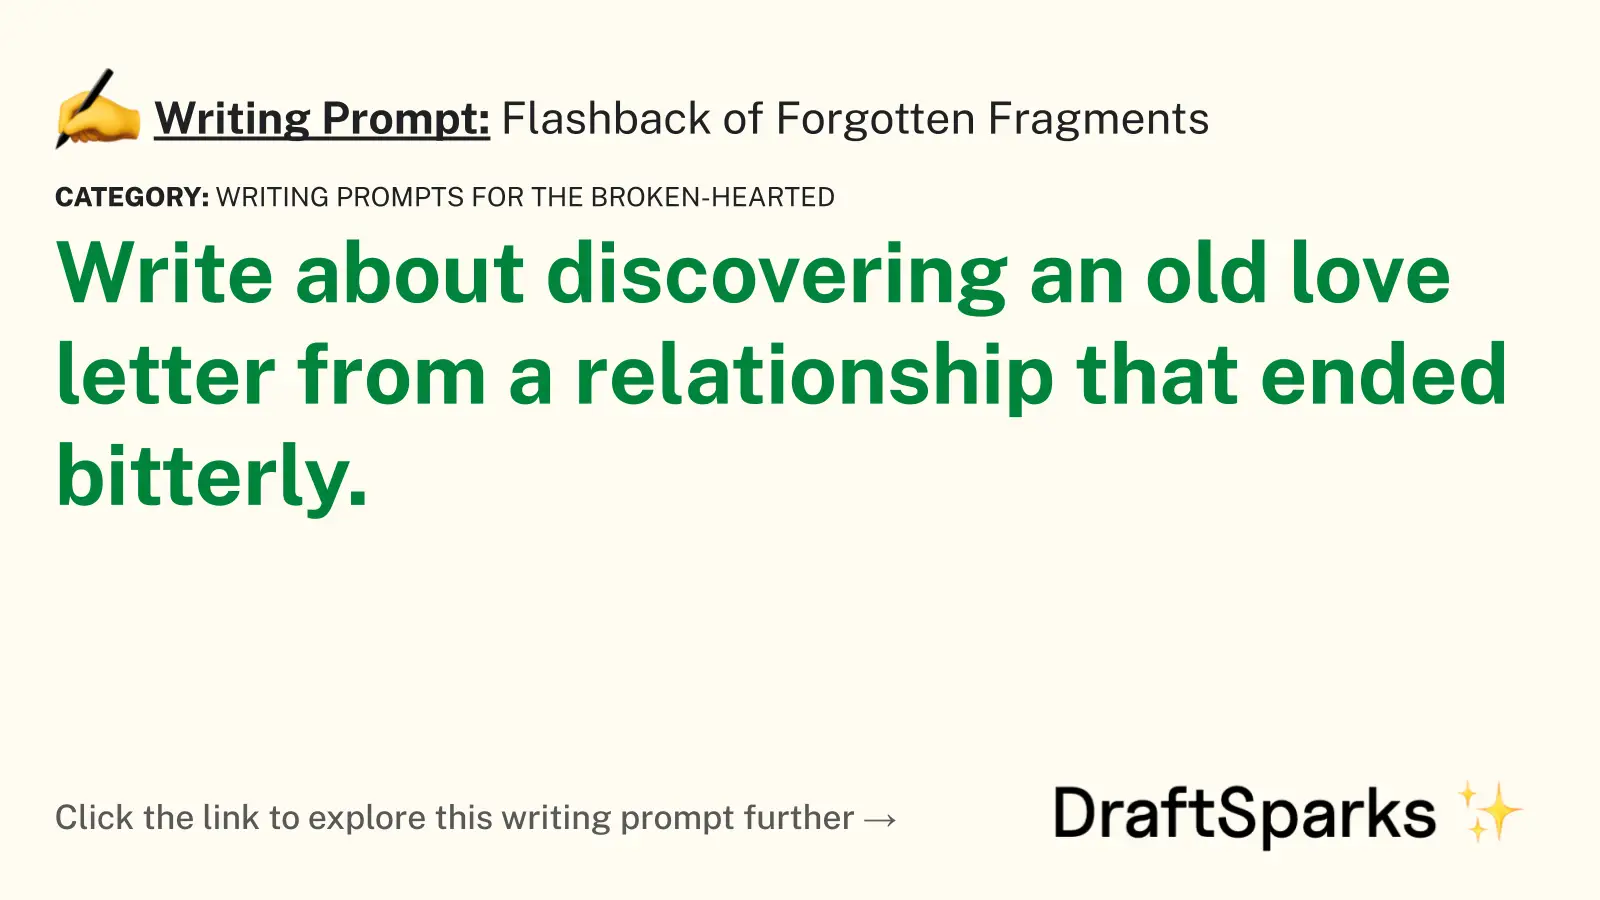 Flashback of Forgotten Fragments